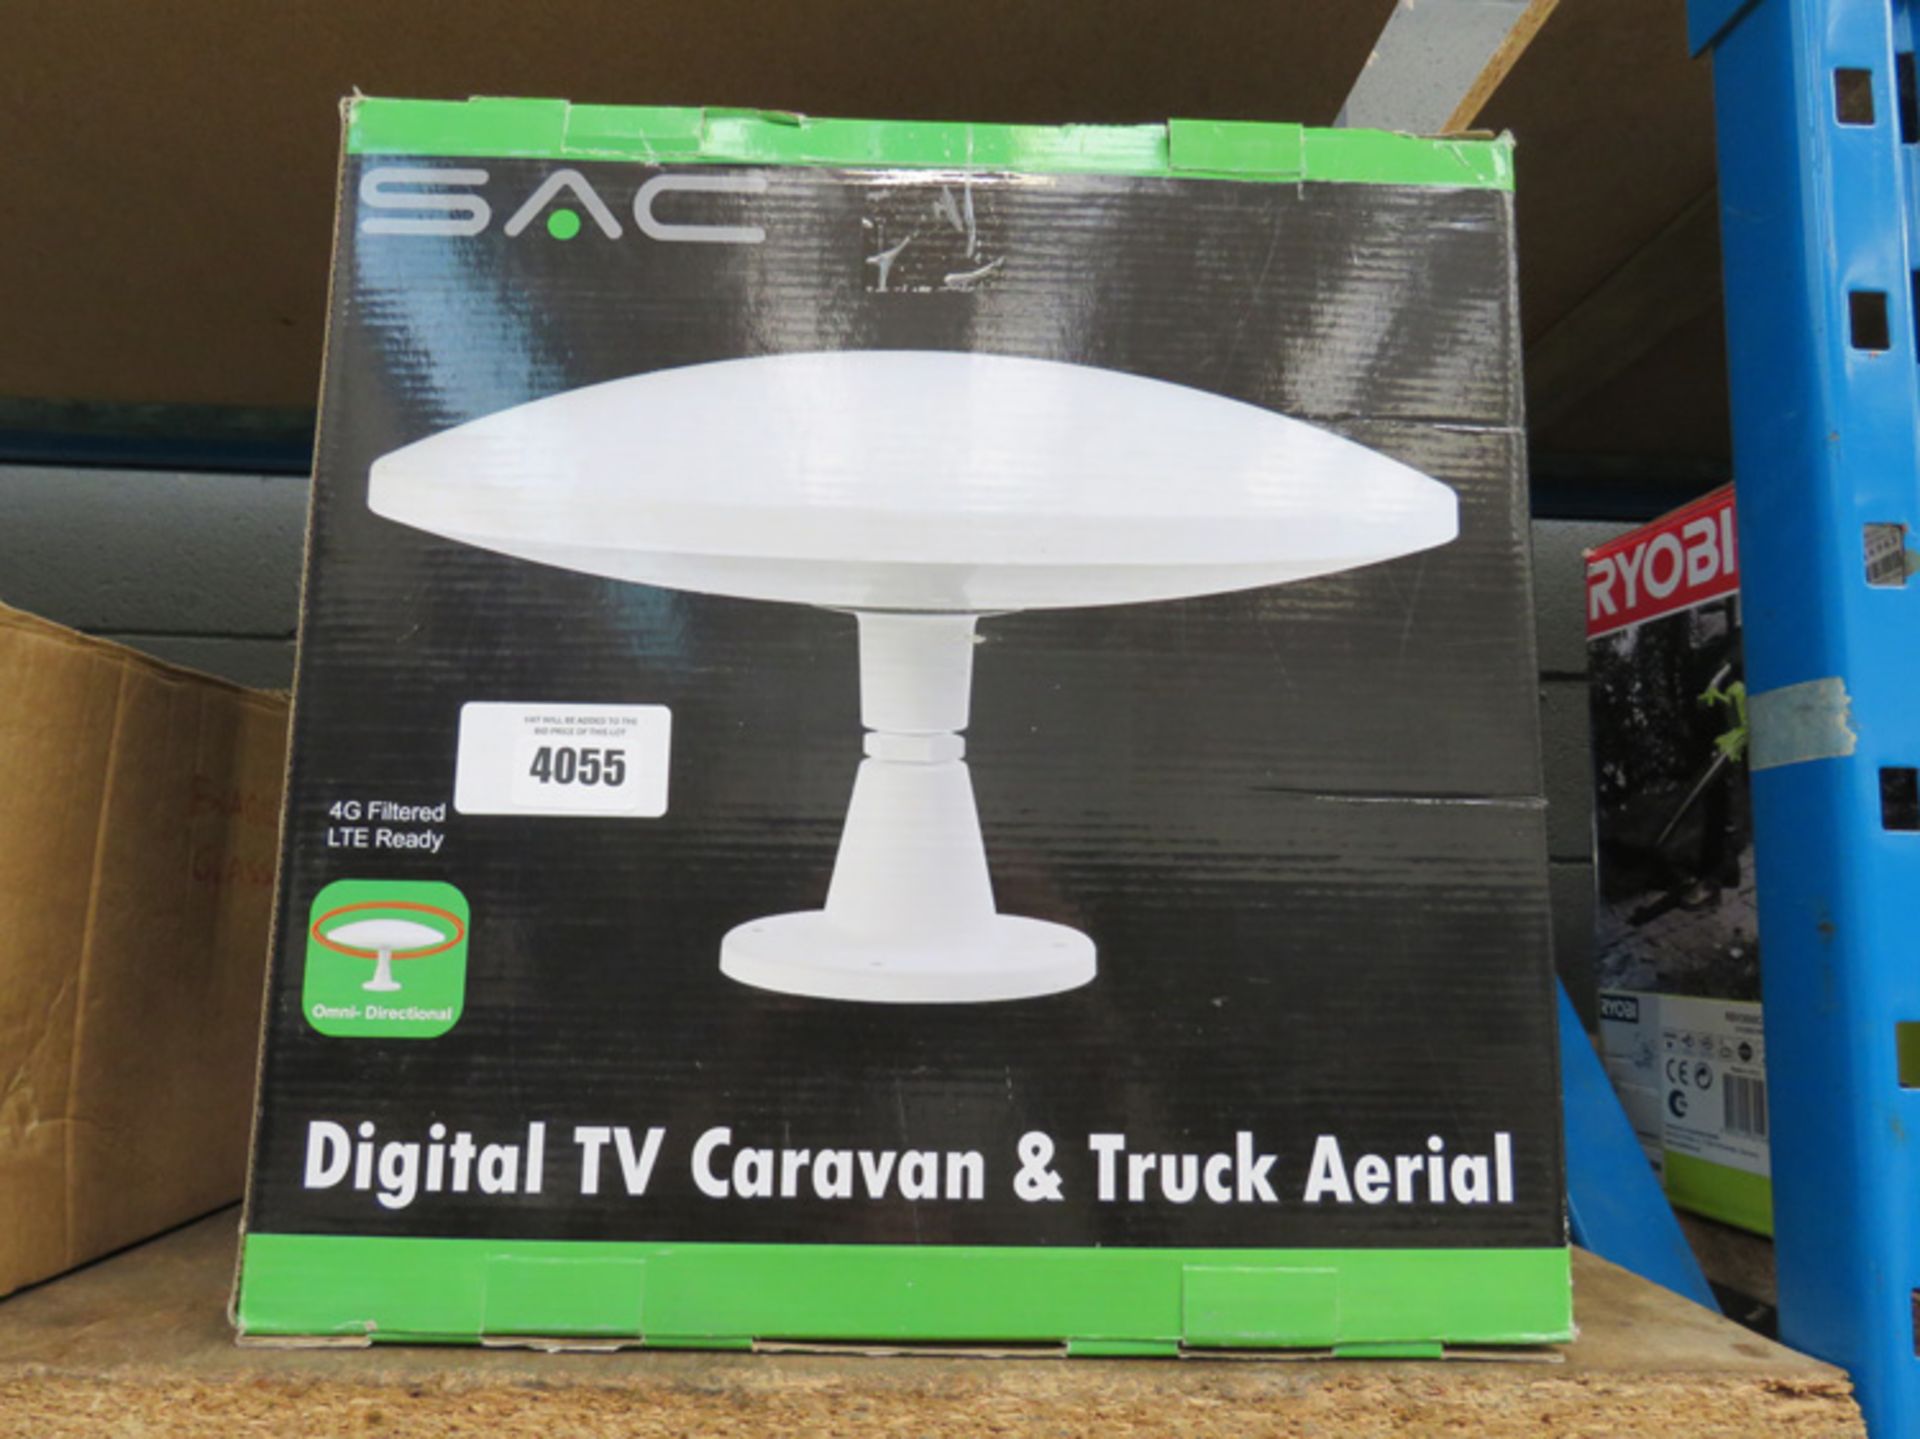 Boxed digital TV caravan and truck aerial